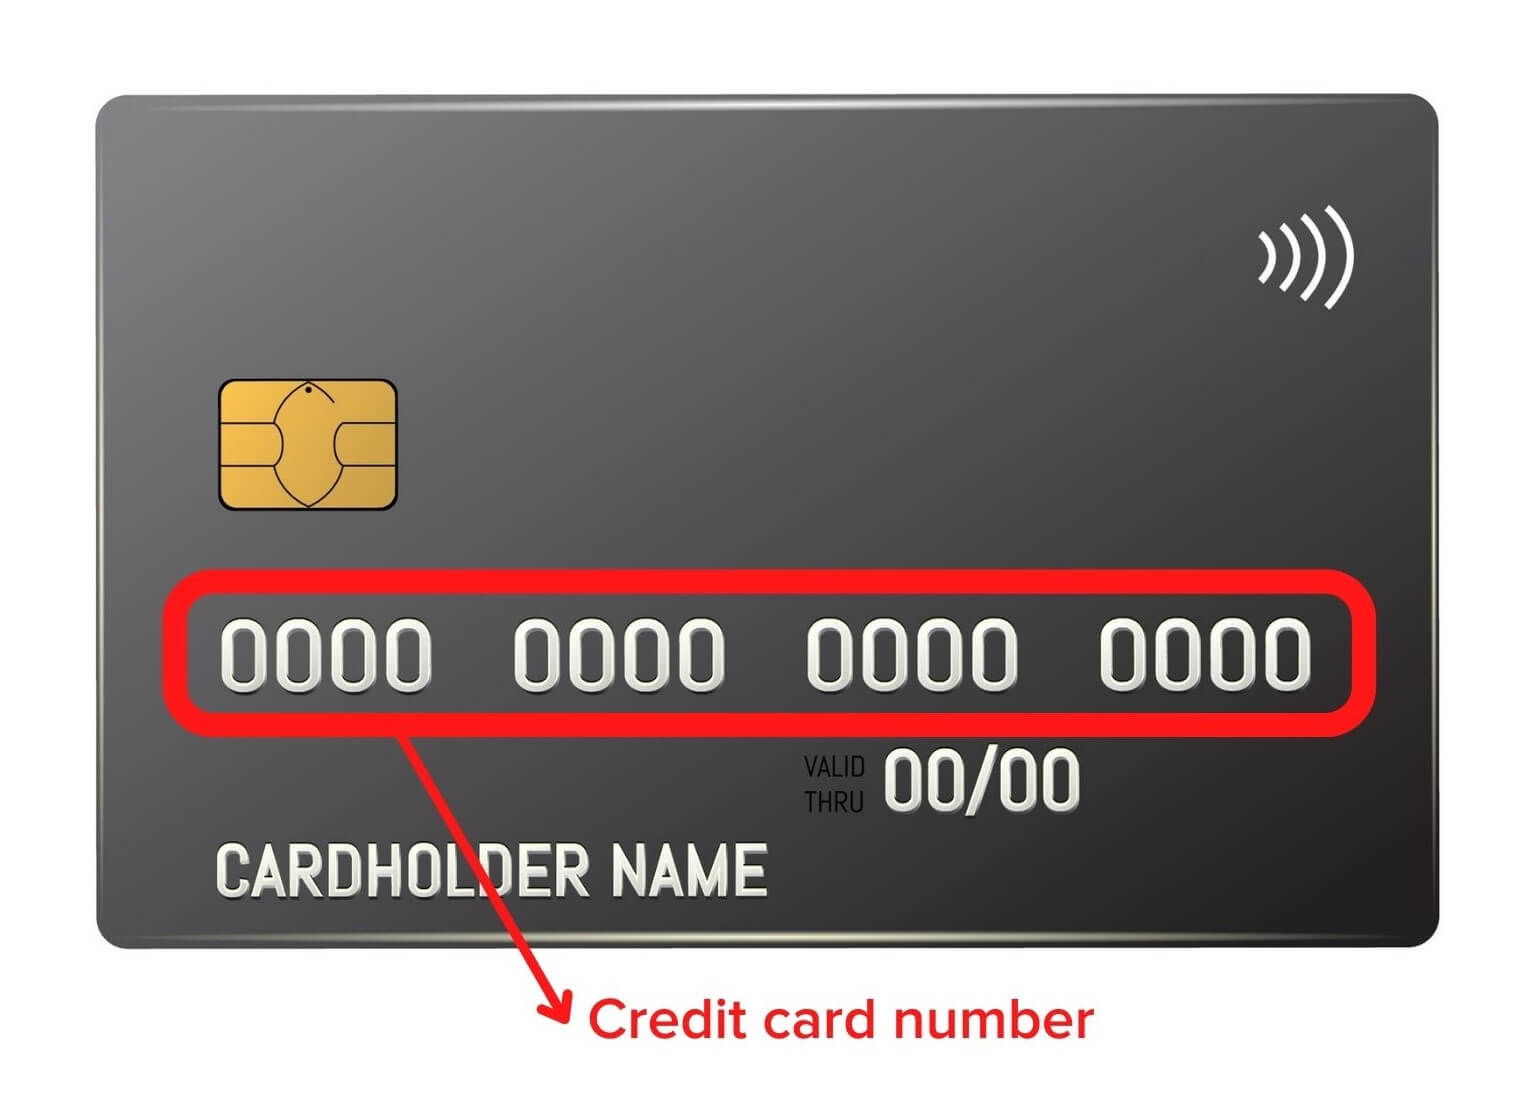 Tarjeta de crédito en blanco con el número de la tarjeta de crédito marcado con un círculo